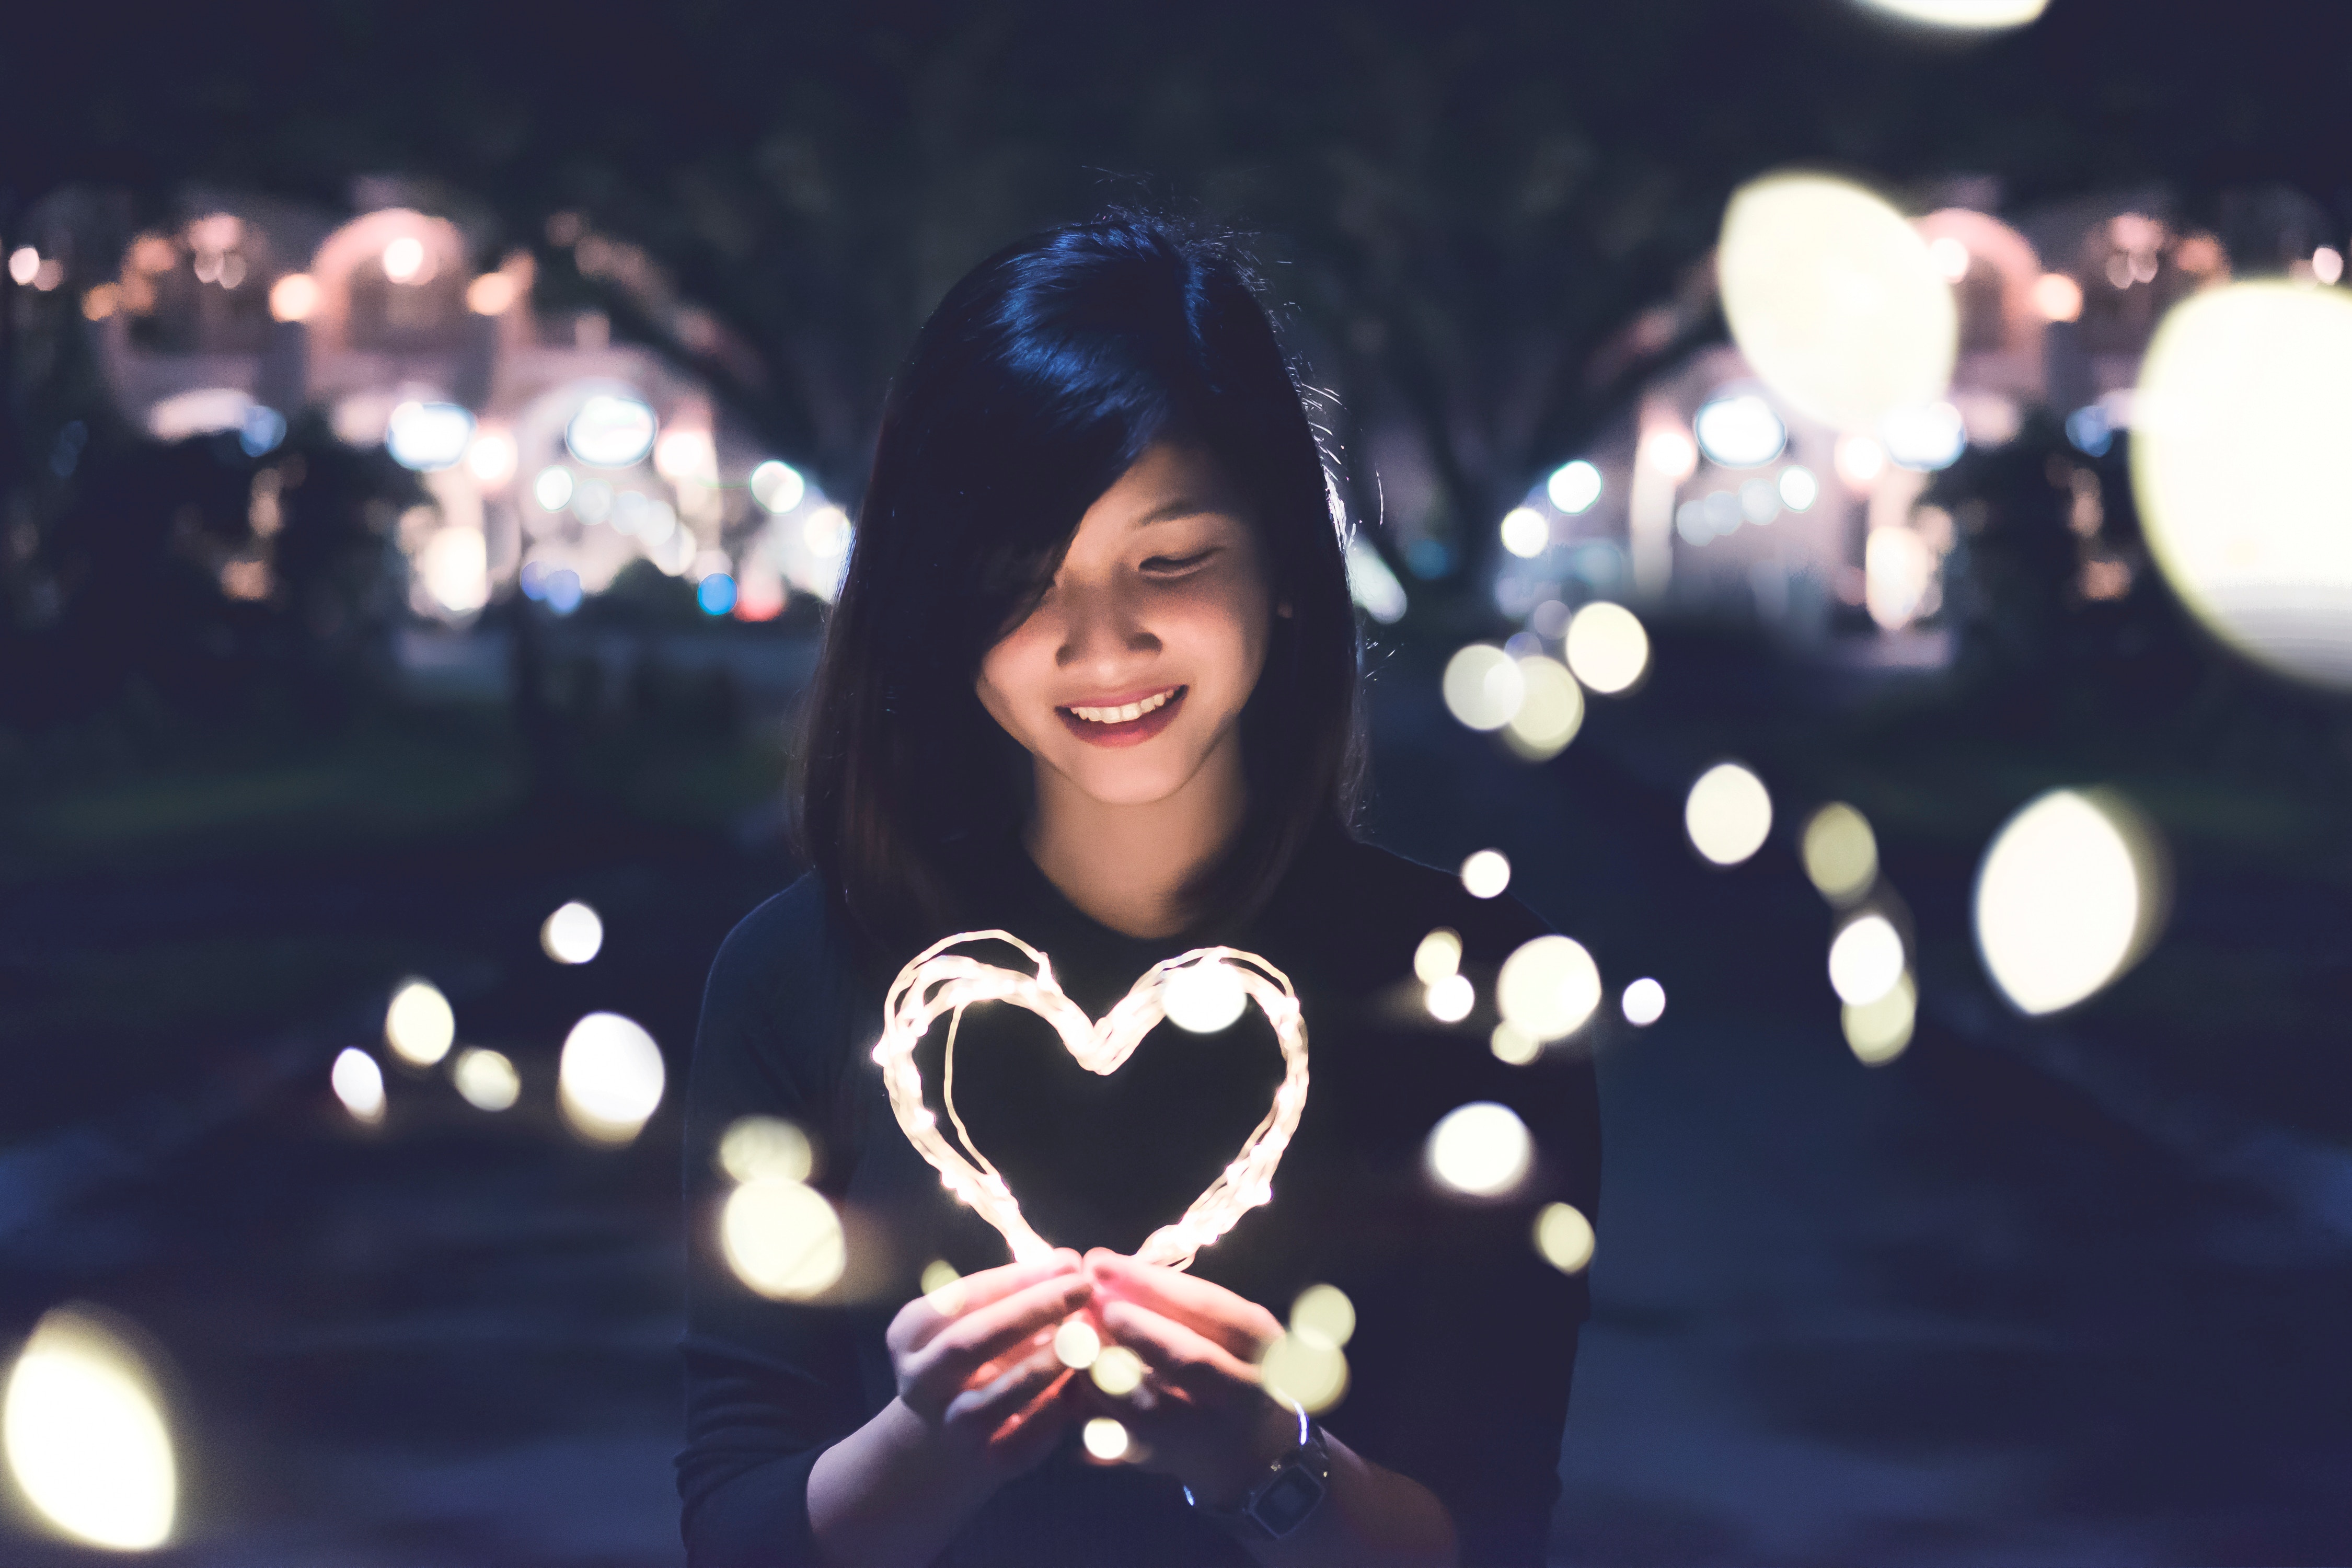 A girl holding a heart shape light